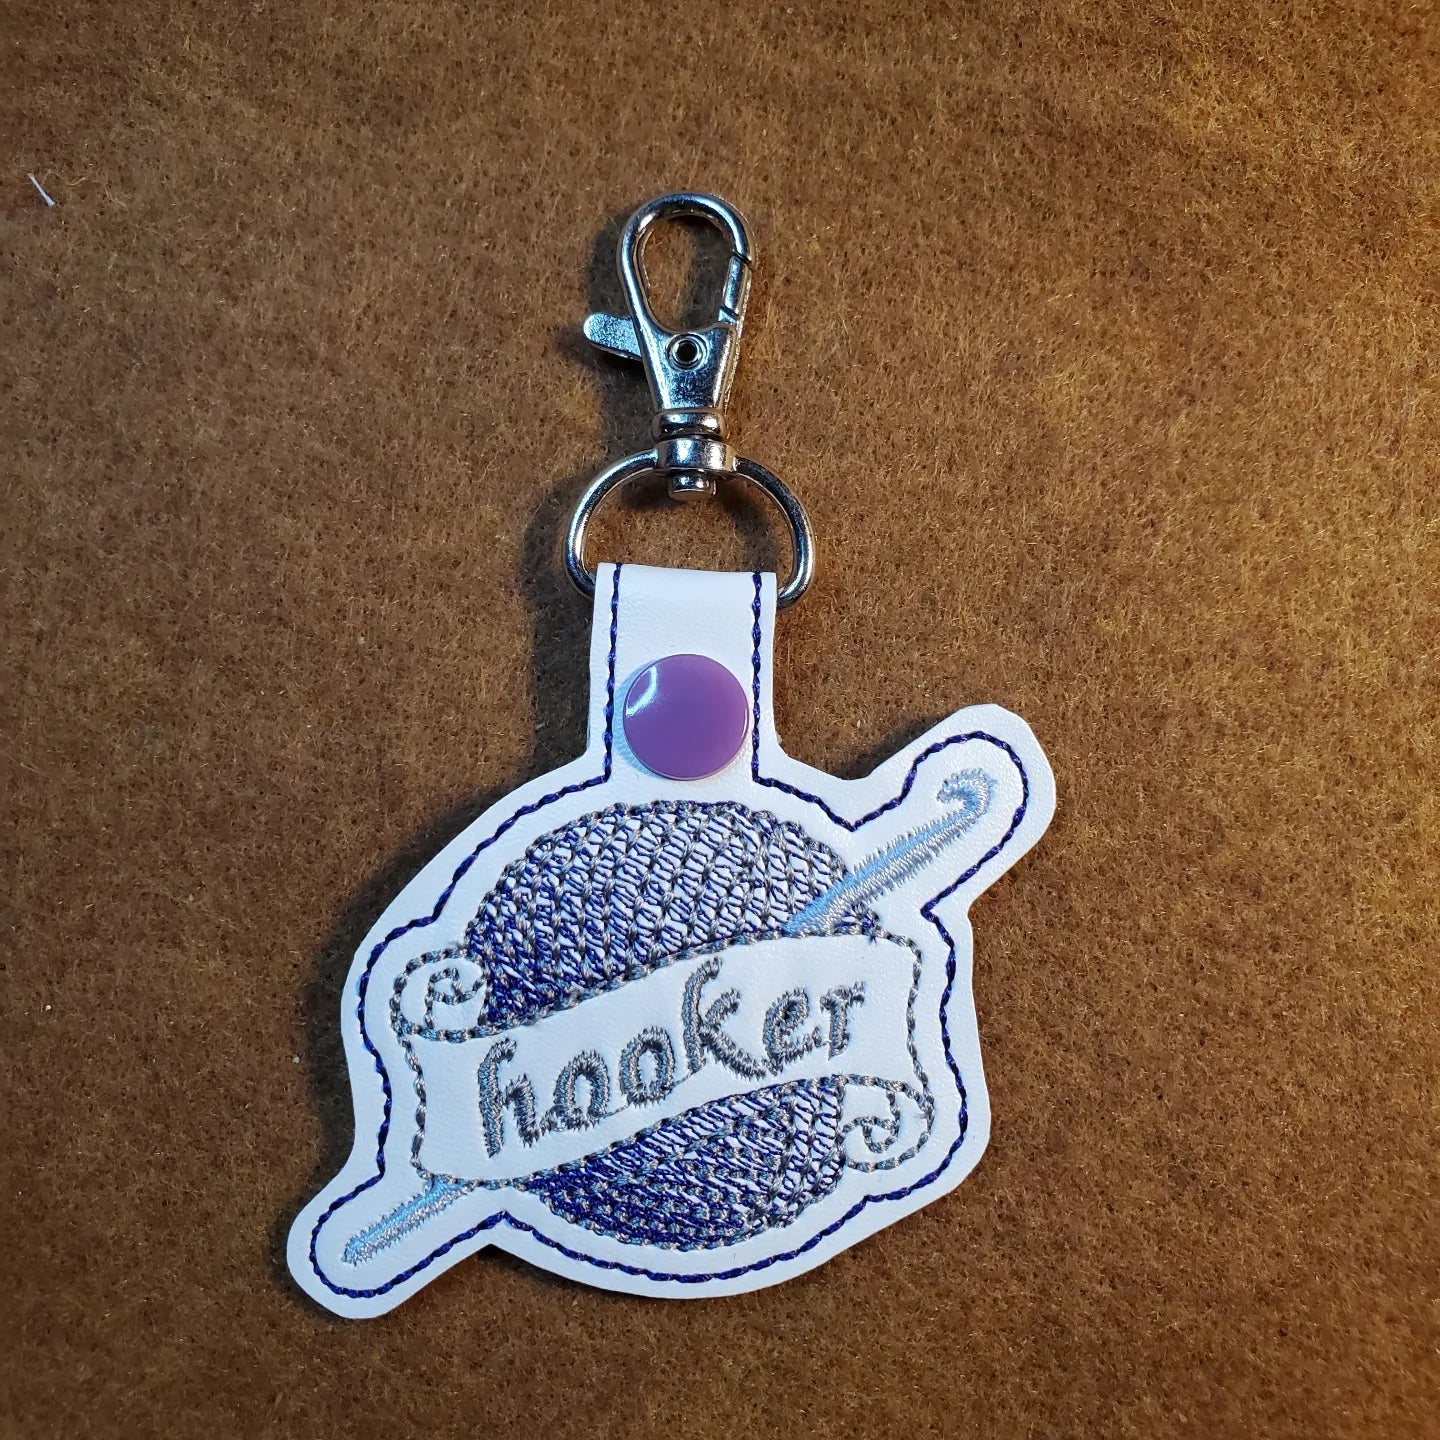 "Hooker" Crochet Theme Key Fob / Back Pack Charm